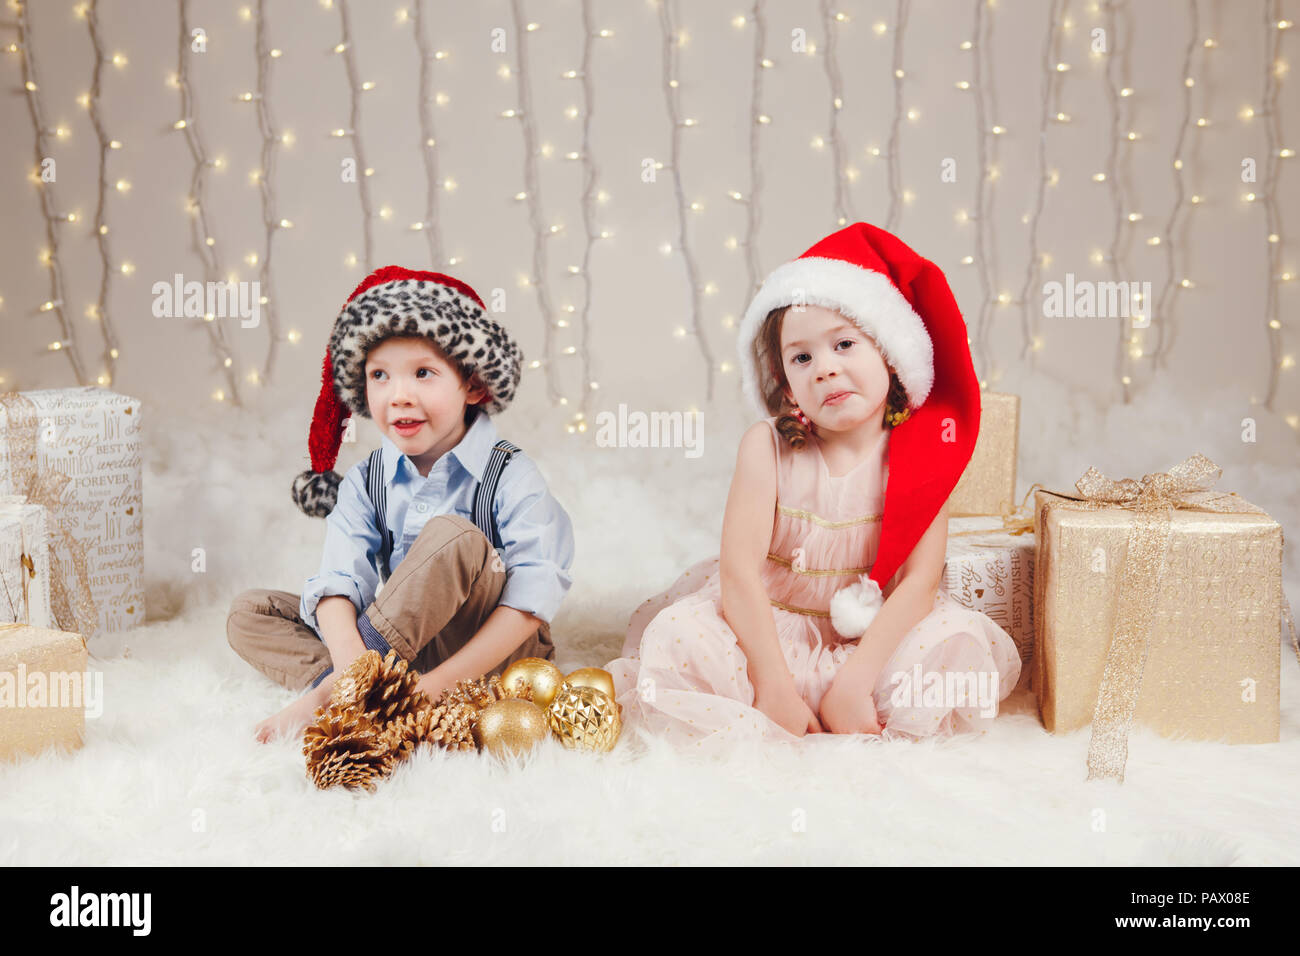 Portrait von weissen Kaukasischen Kinder Freunde Geschwister feiern  Weihnachten oder Neujahr. Little cute adorable Mädchen und Jungen tragen  Santa Claus Hüte si Stockfotografie - Alamy